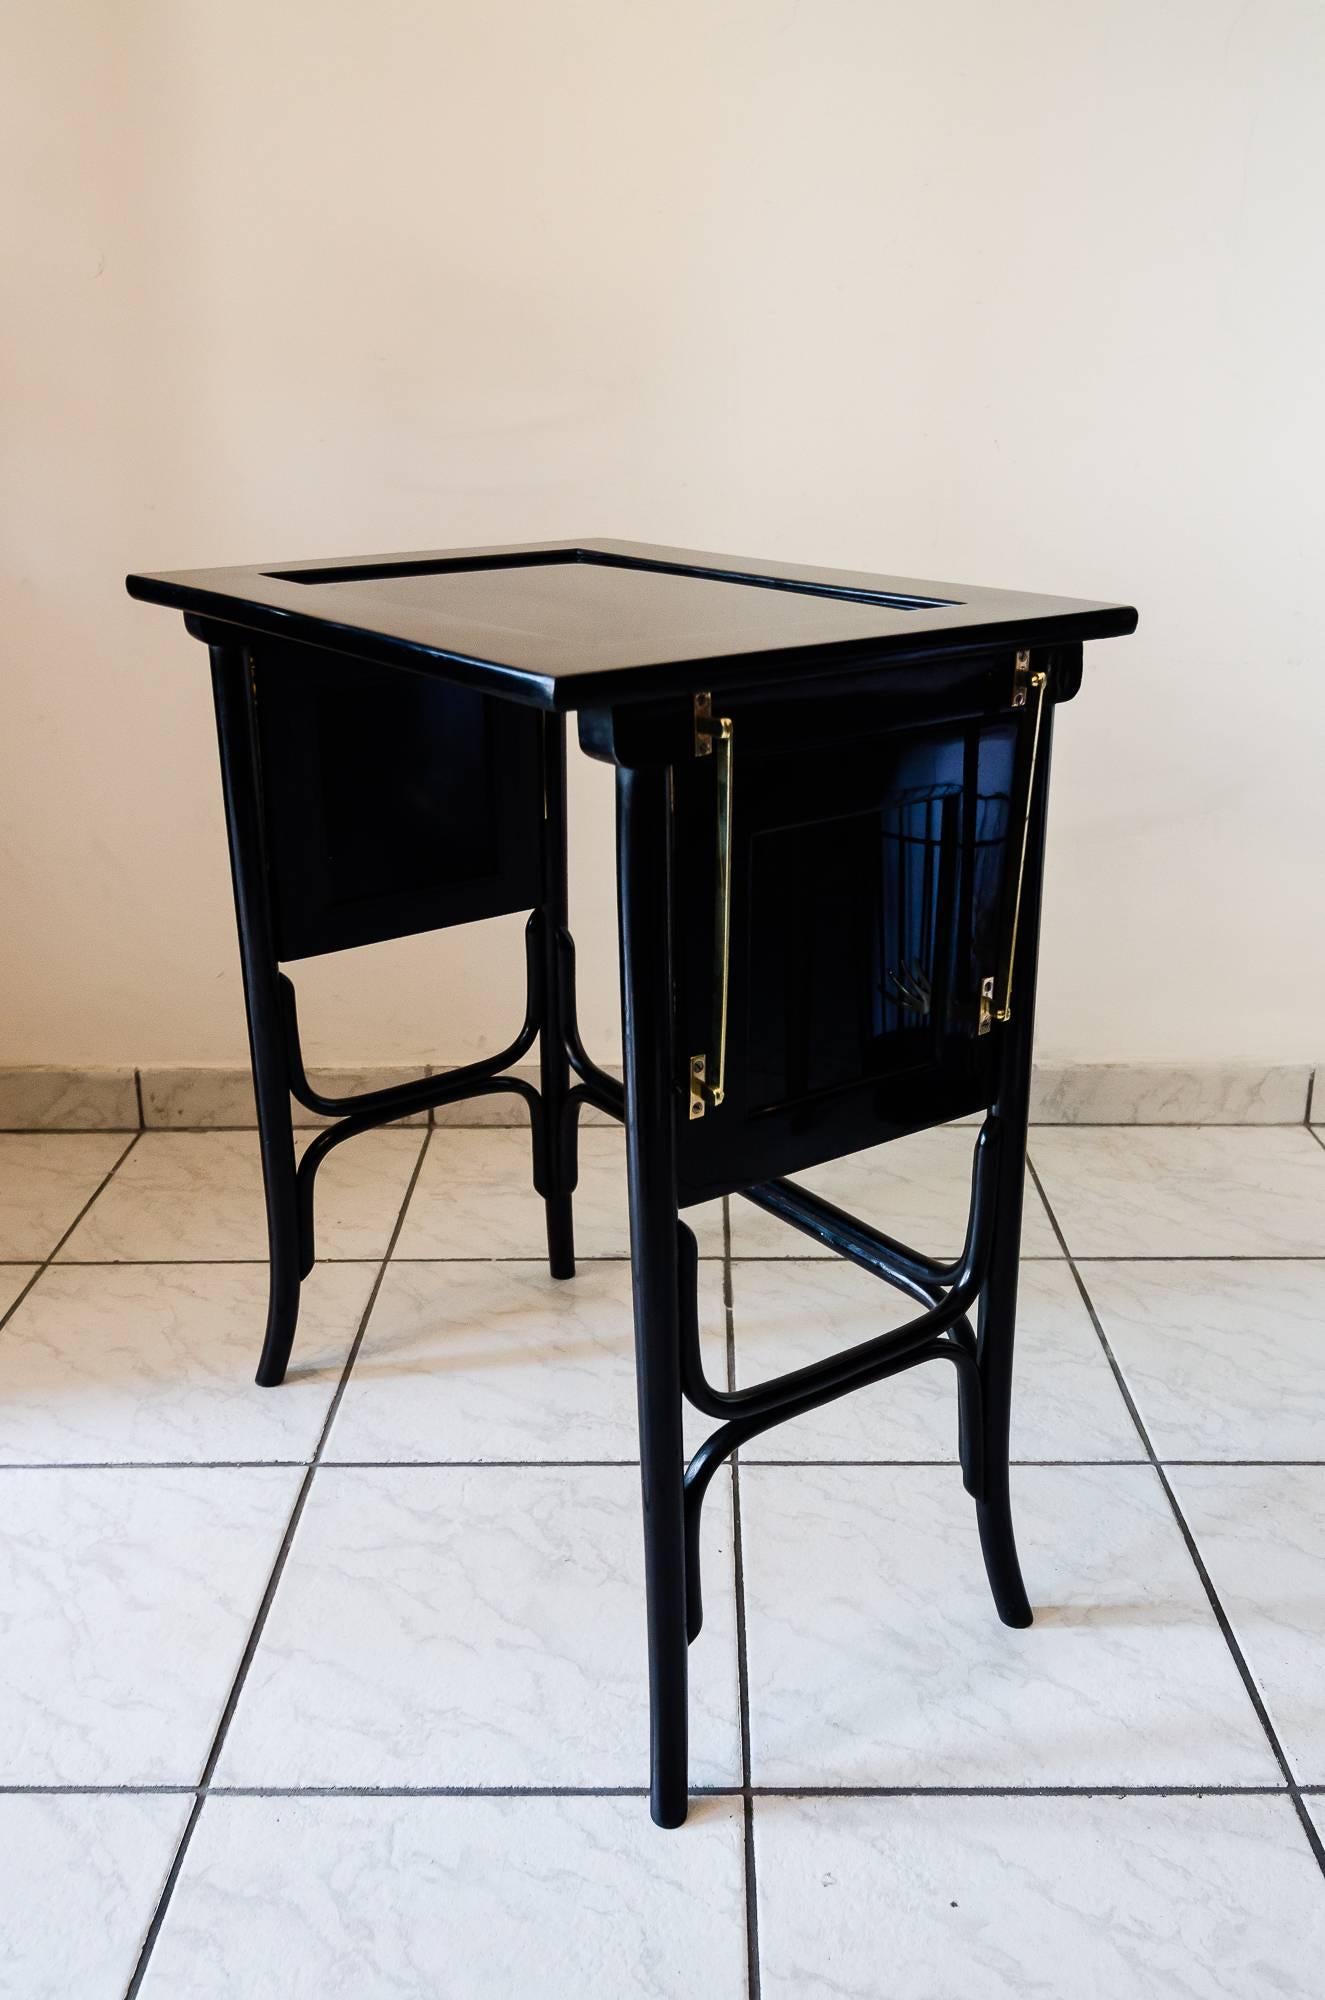 Jugendstil Table with Black Glass  (Geschwärzt)